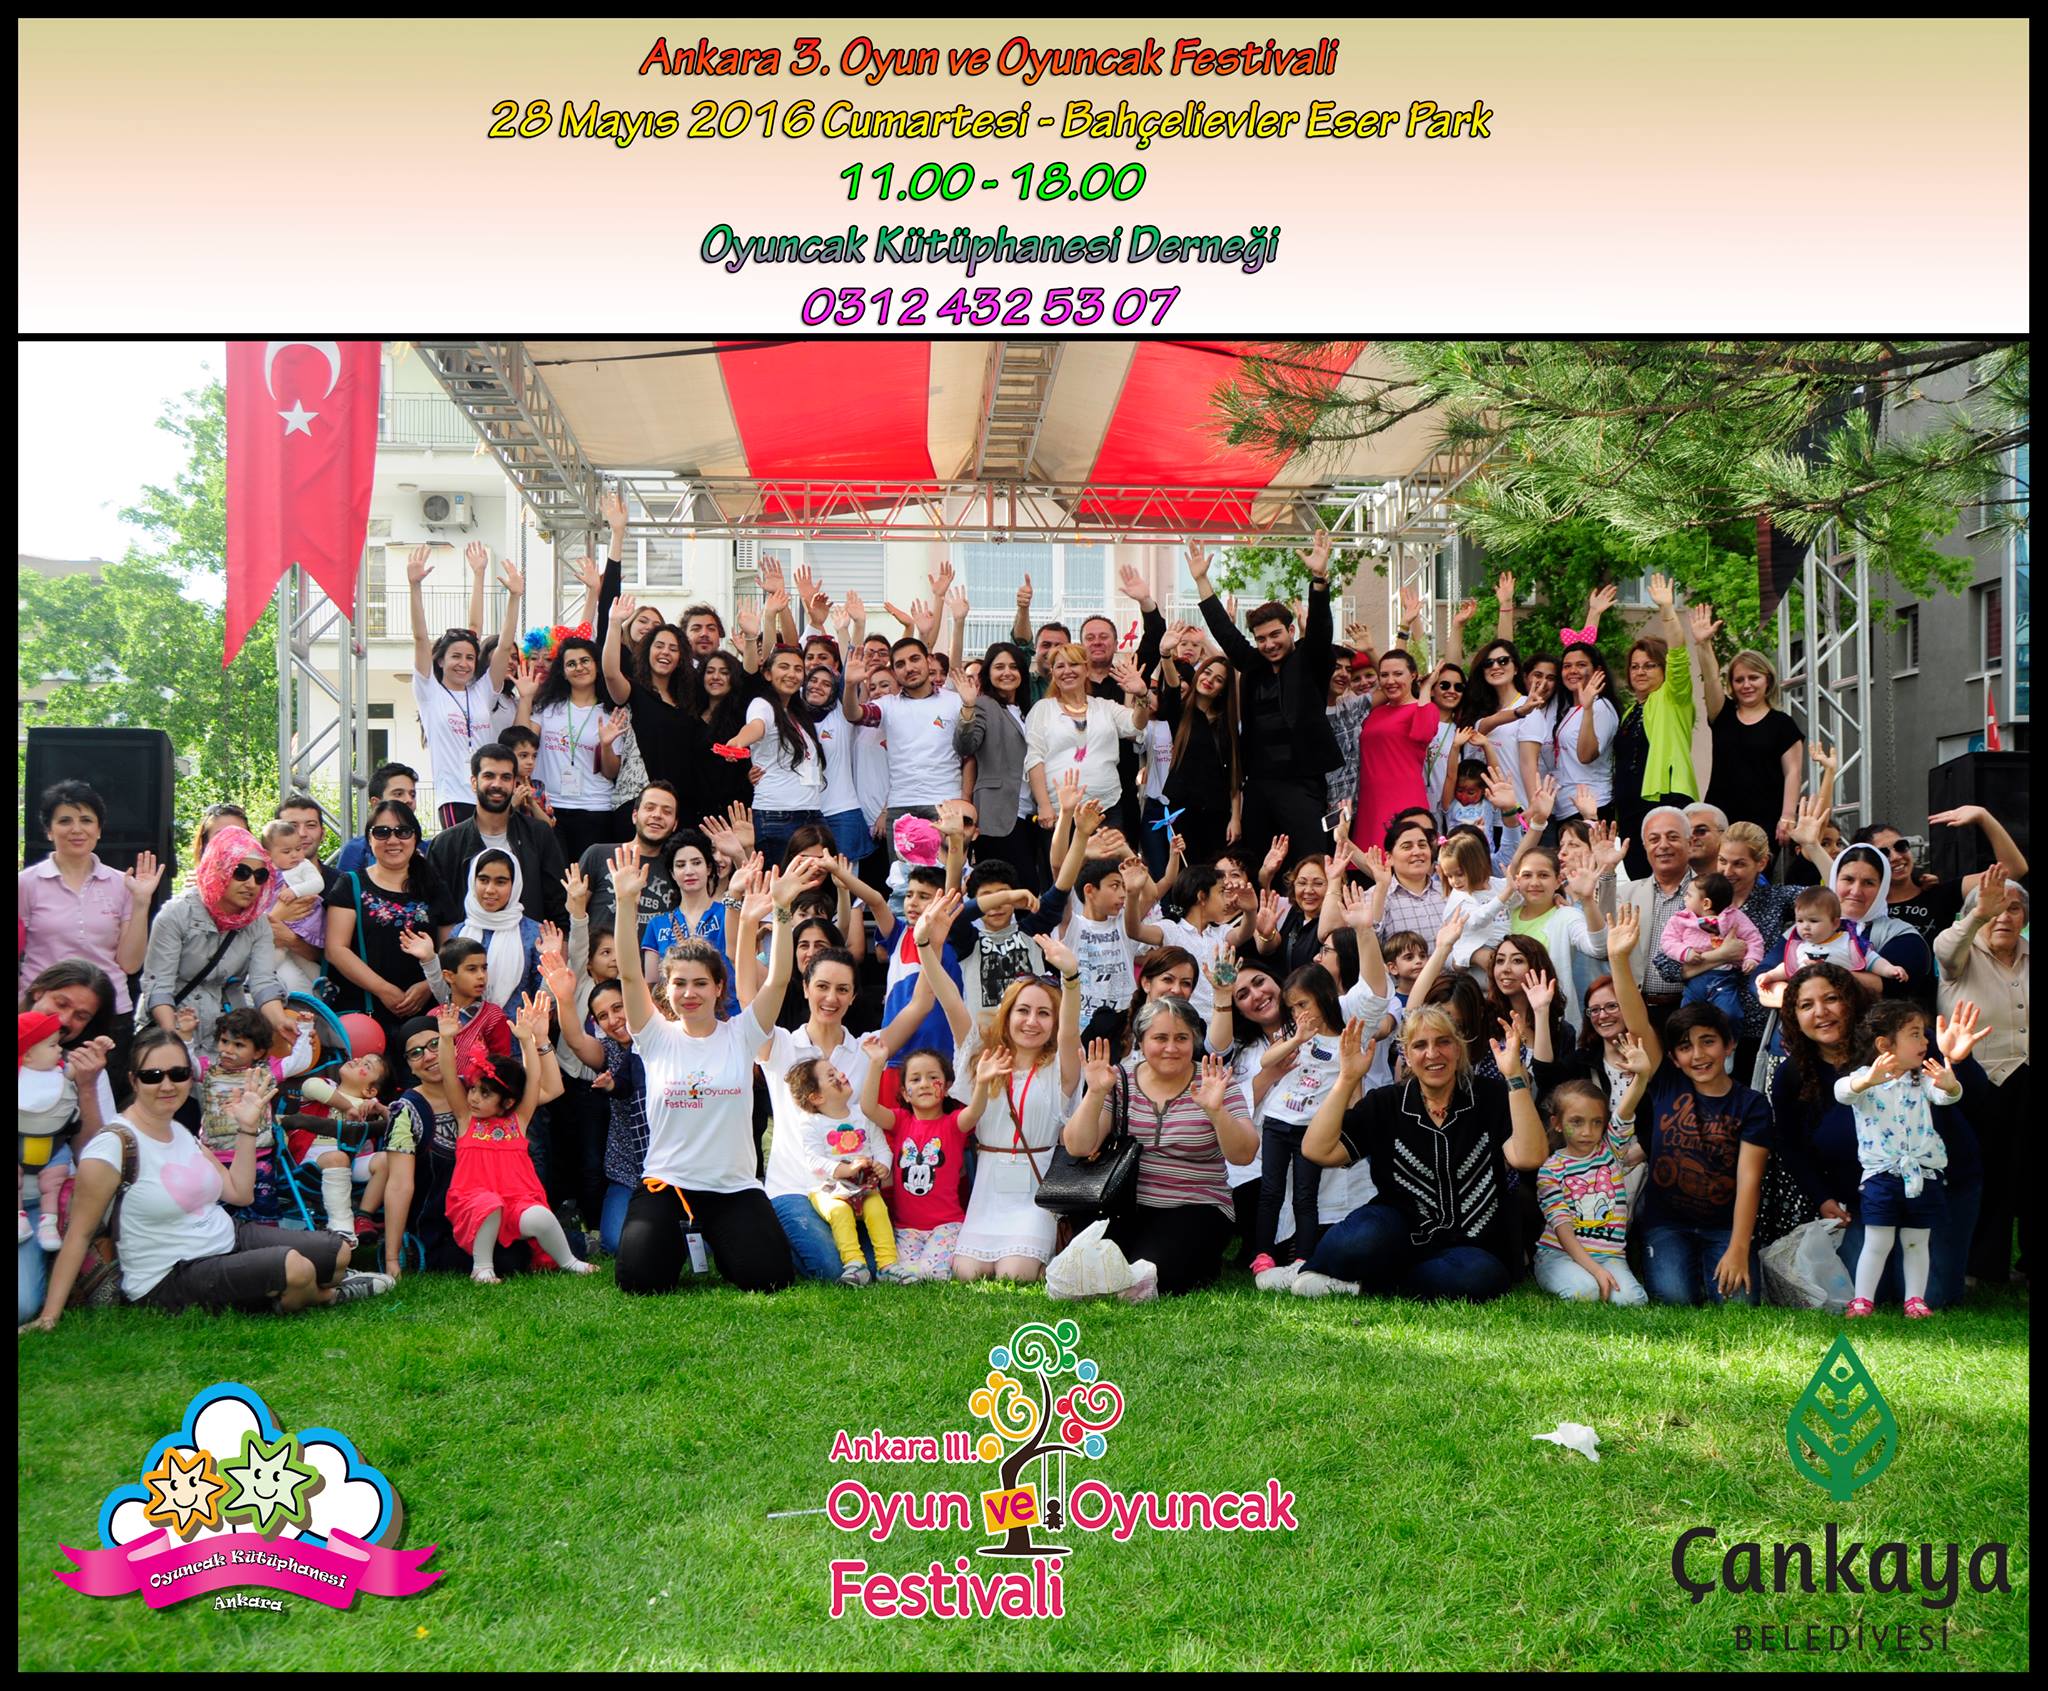 x 3. Ankara Oyun ve Oyuncak Festivali (28 Mayıs) - Mayıs 2016 17:39